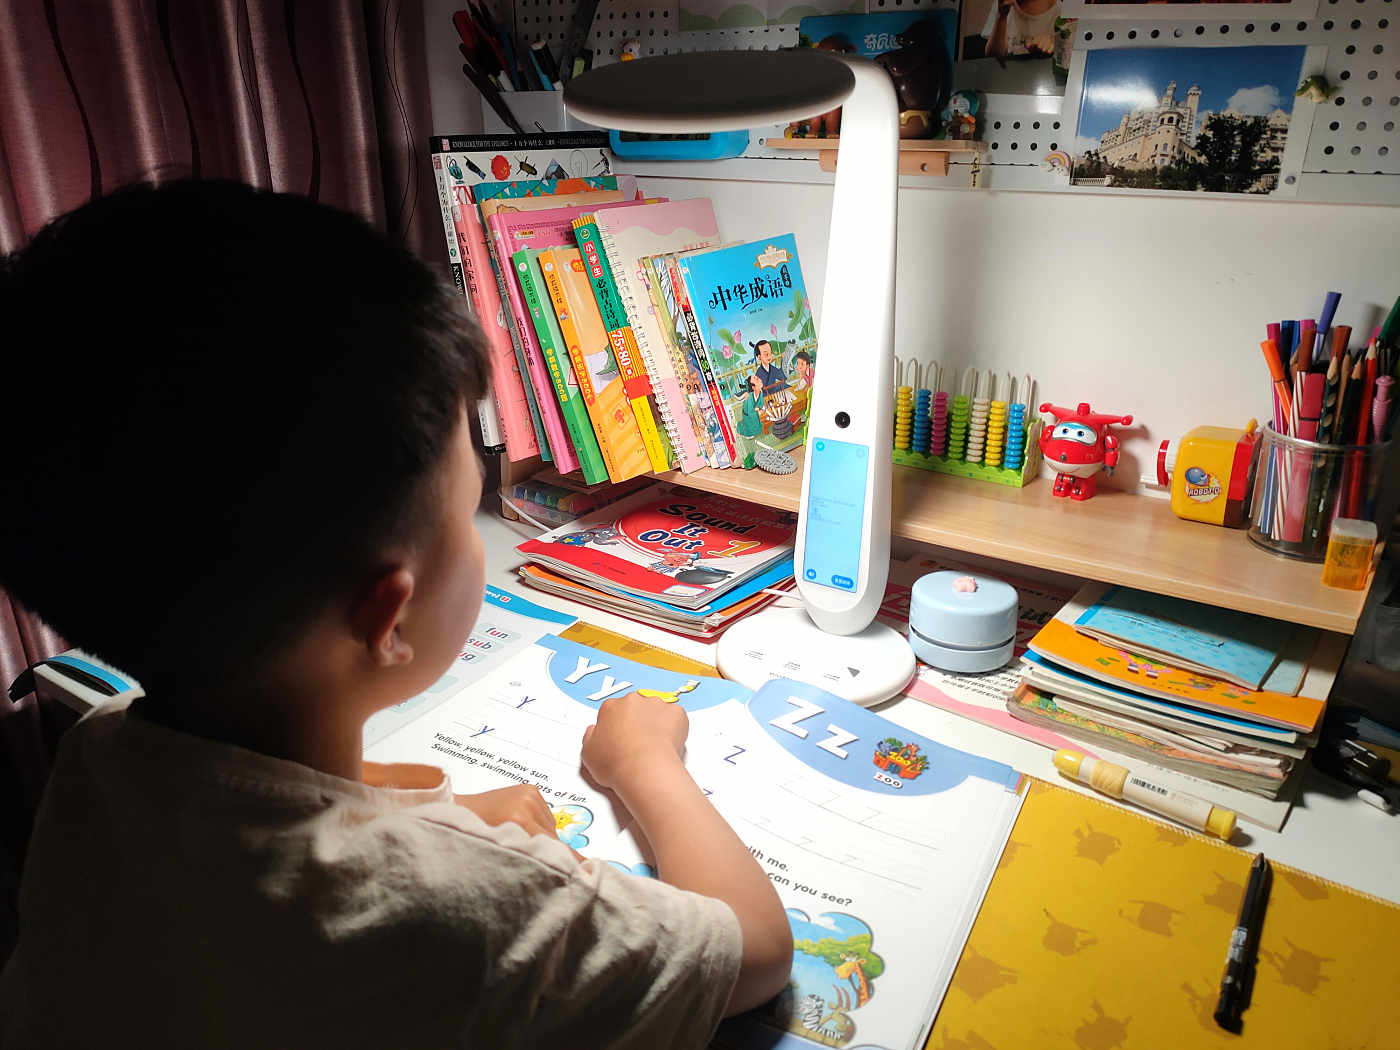 护眼又能指导孩子高效学习的网易有道智能学习灯到底怎么样